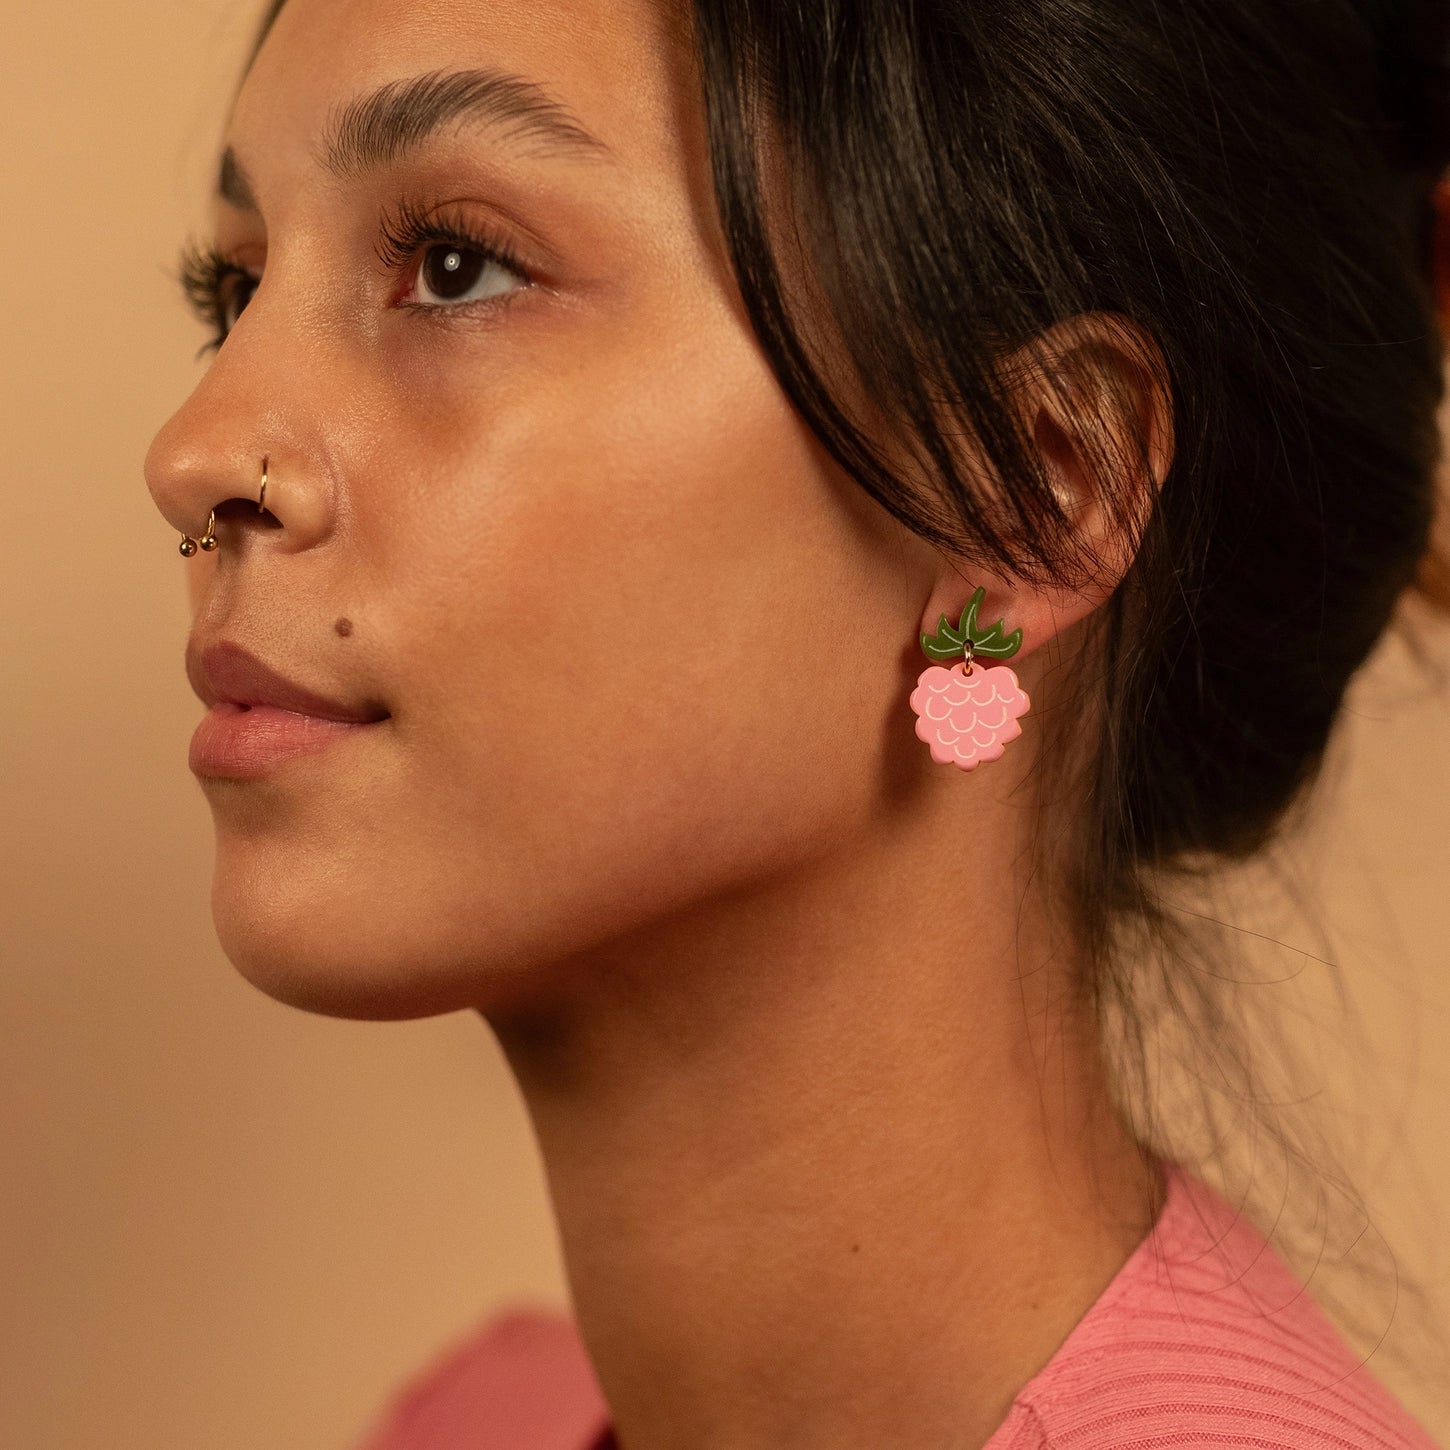 Raspberry Earrings